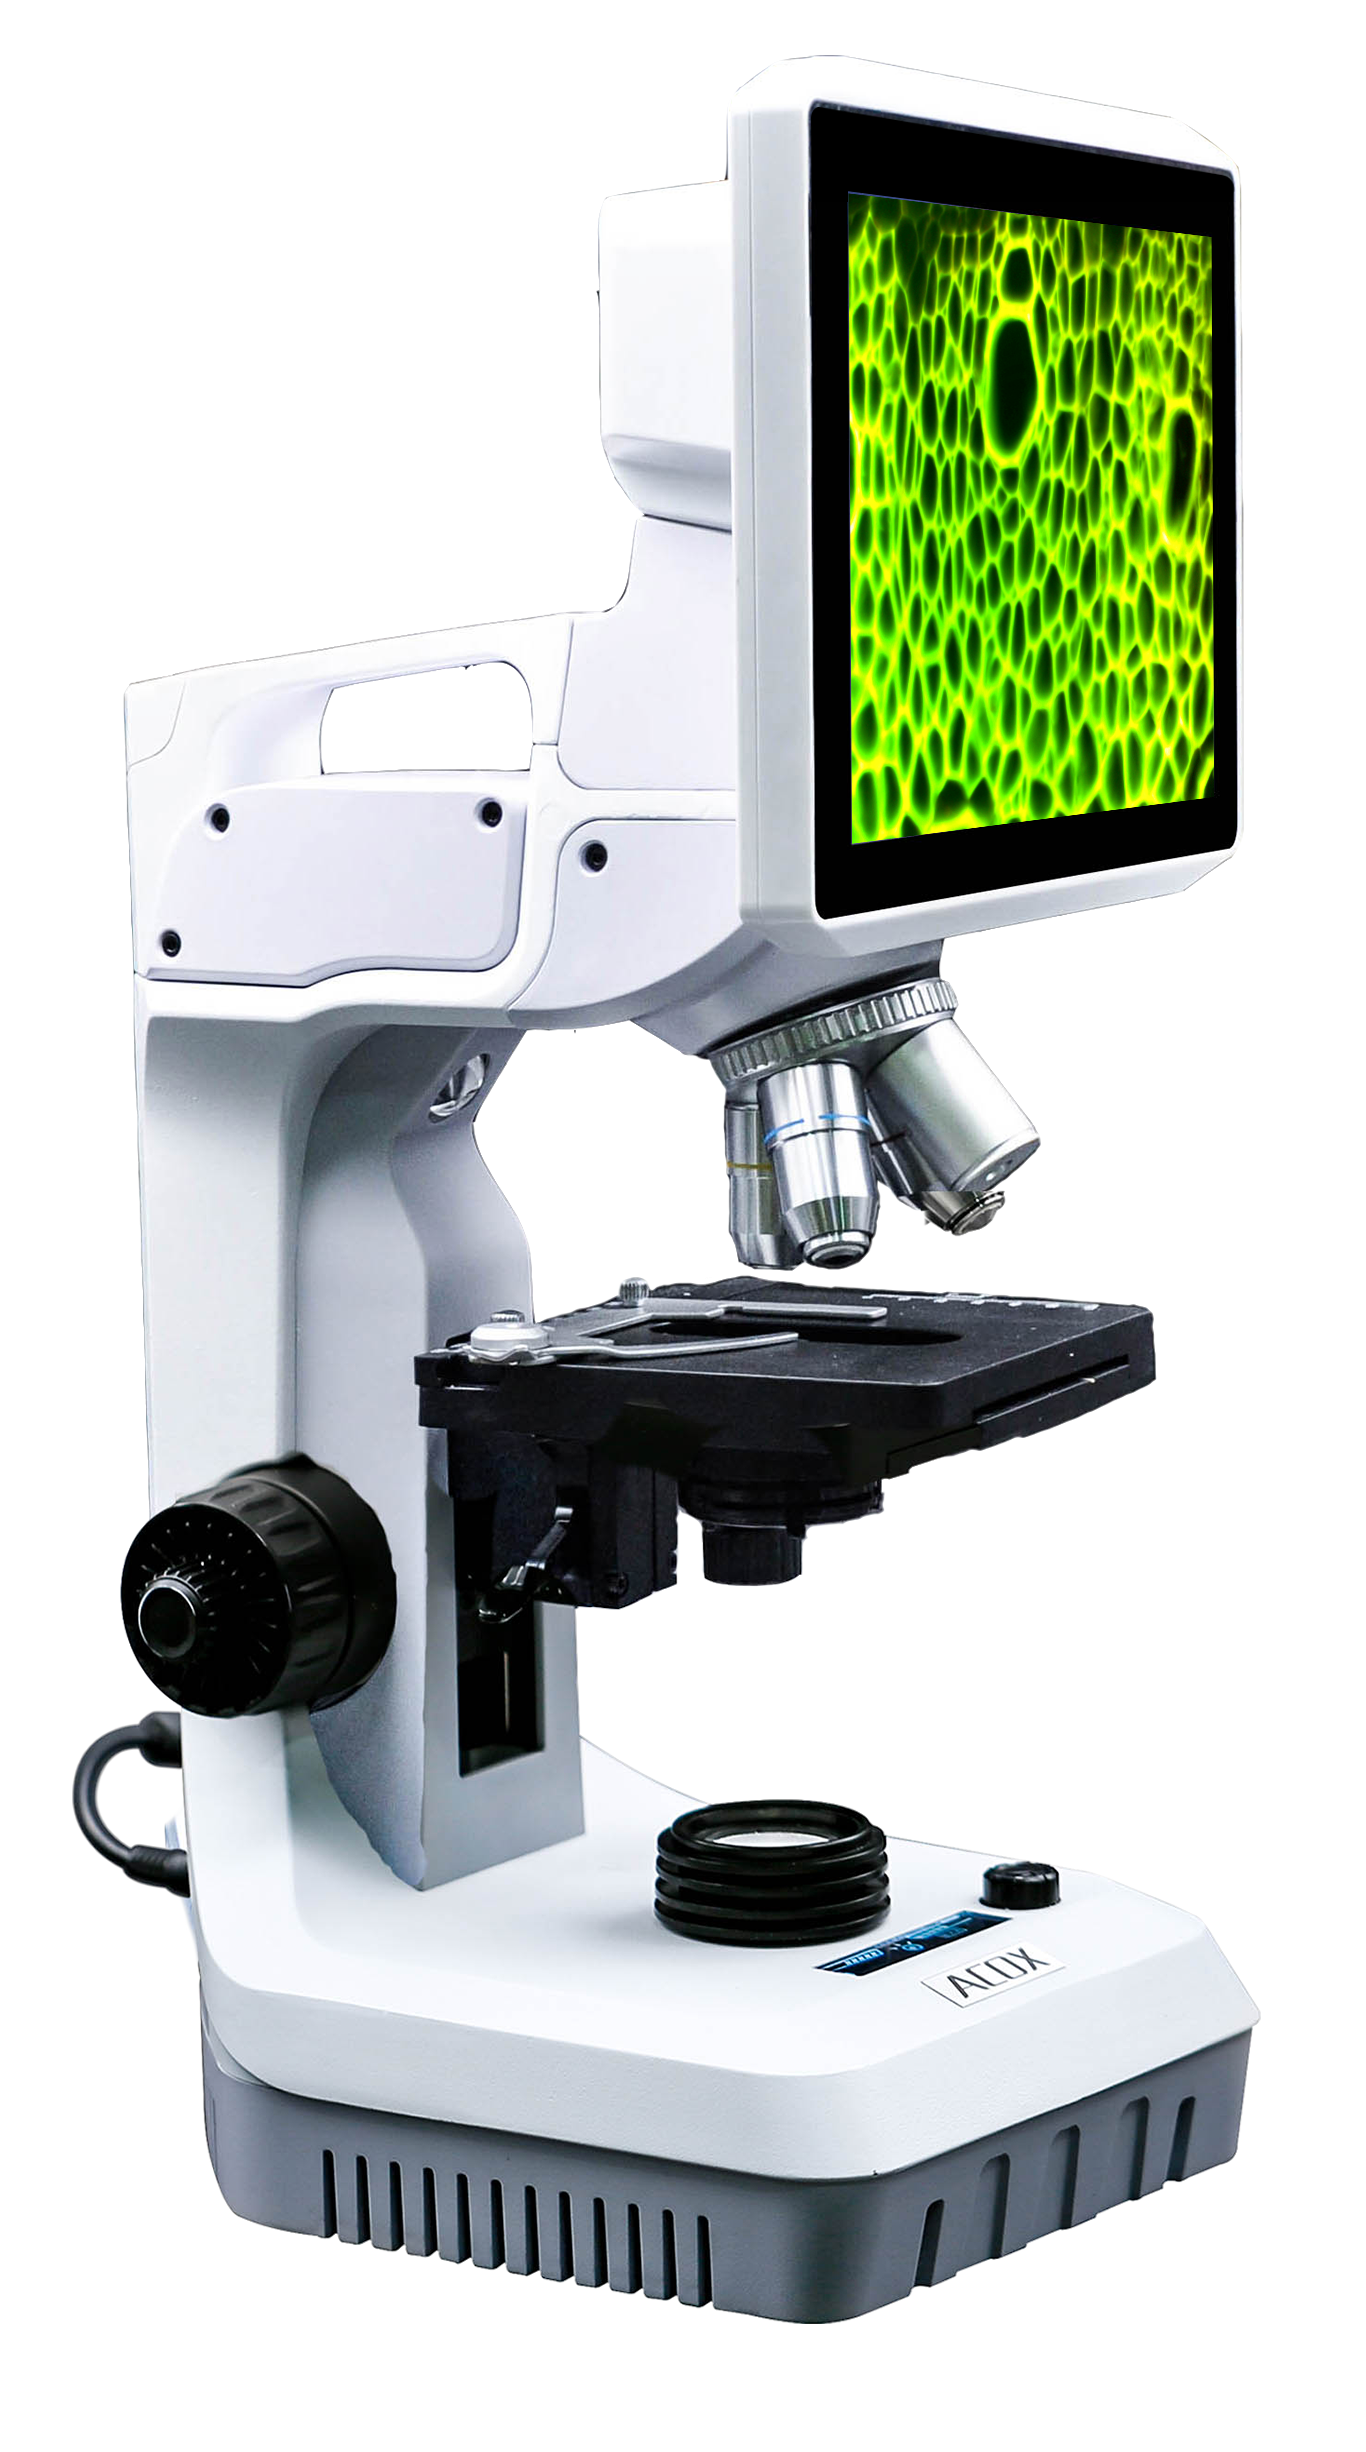 高分辨场发射扫描电子显微镜-广西大学海洋学院